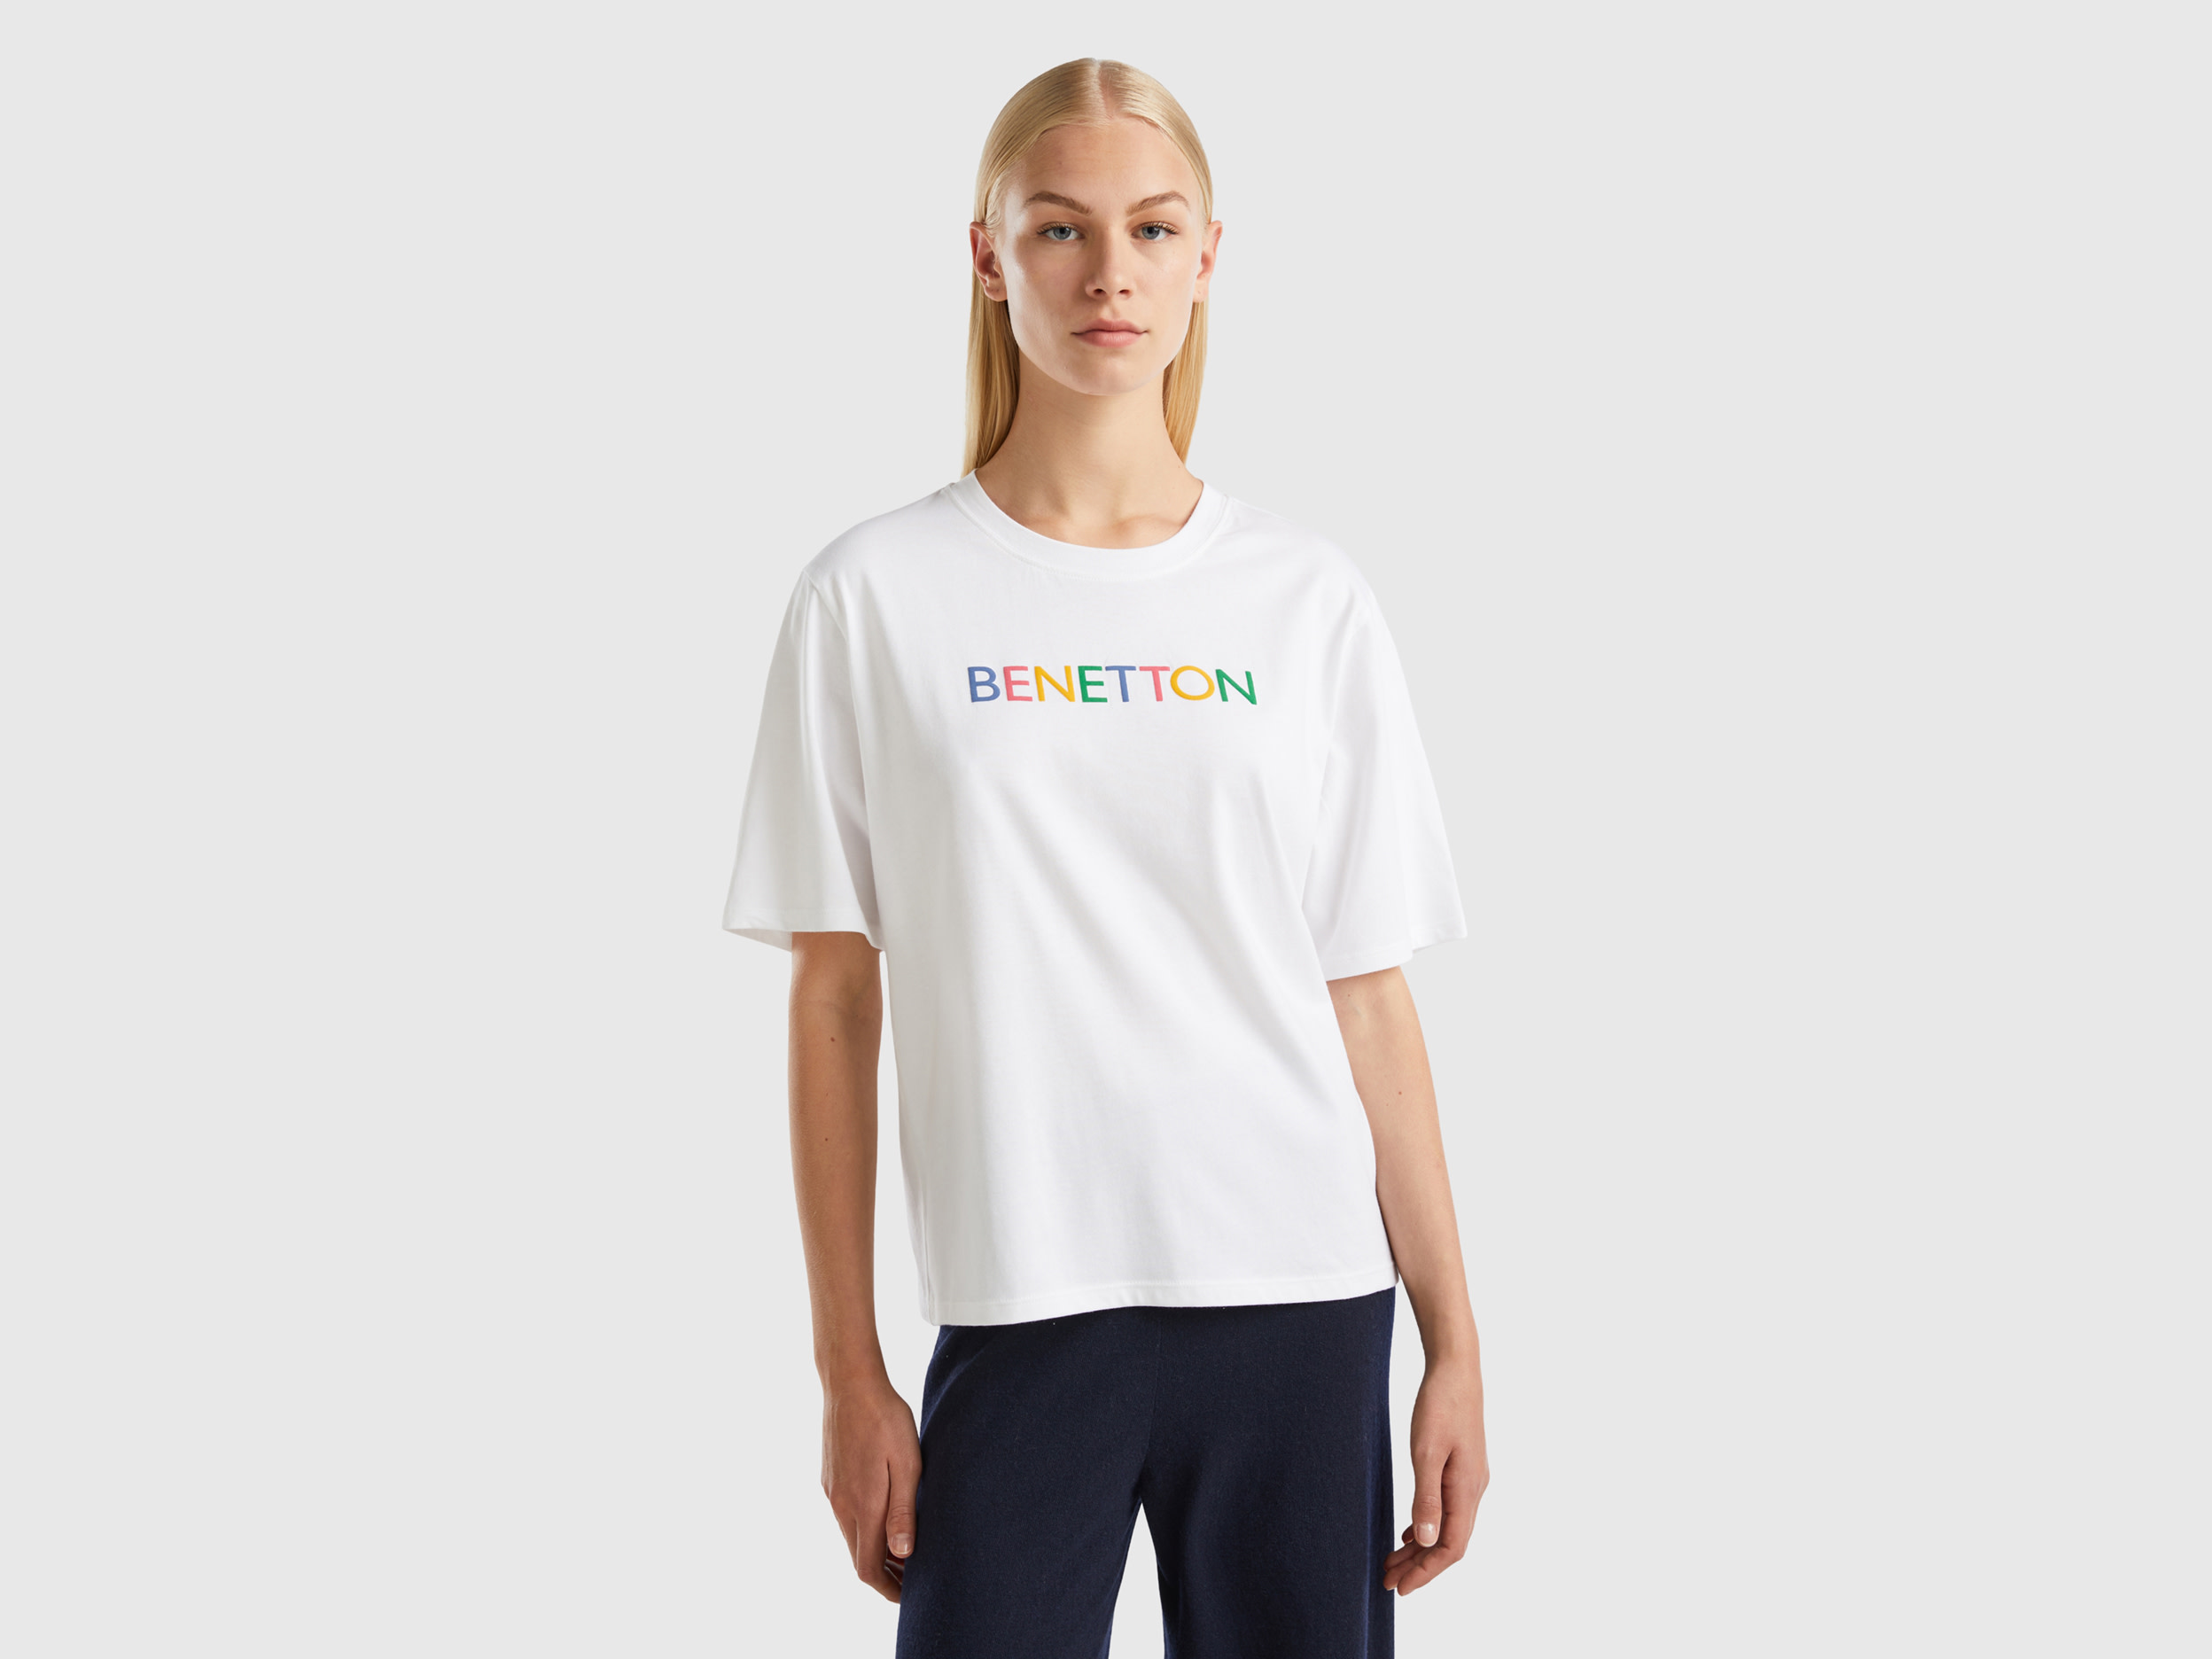 Benetton, T-shirt With Logo Text, size M, White, Women